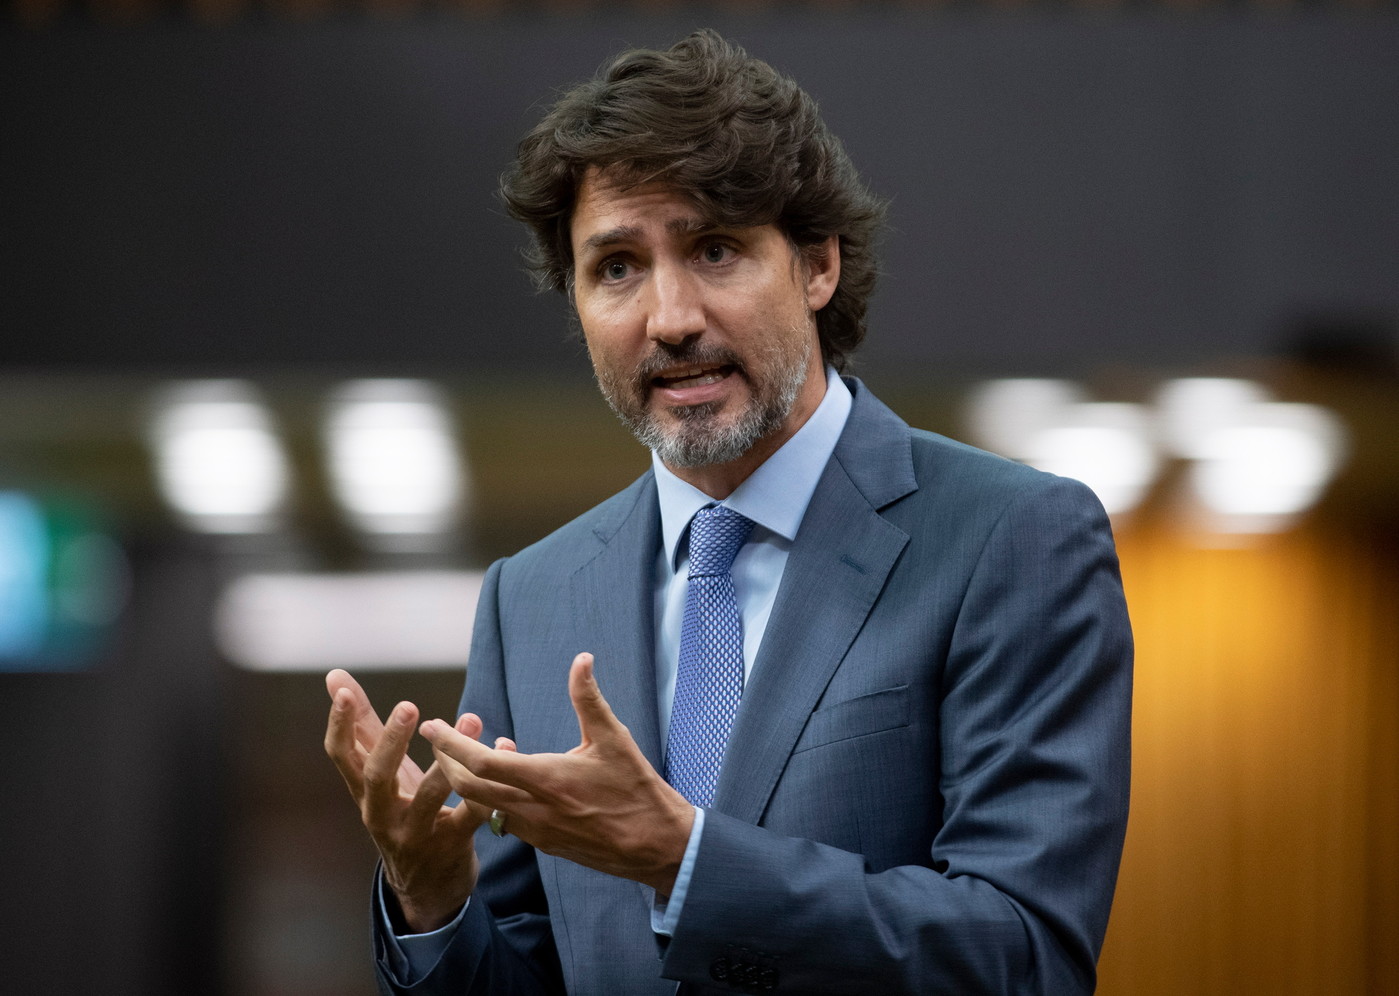 Justin Trudeau au cœur d’un scandale éthique et politique